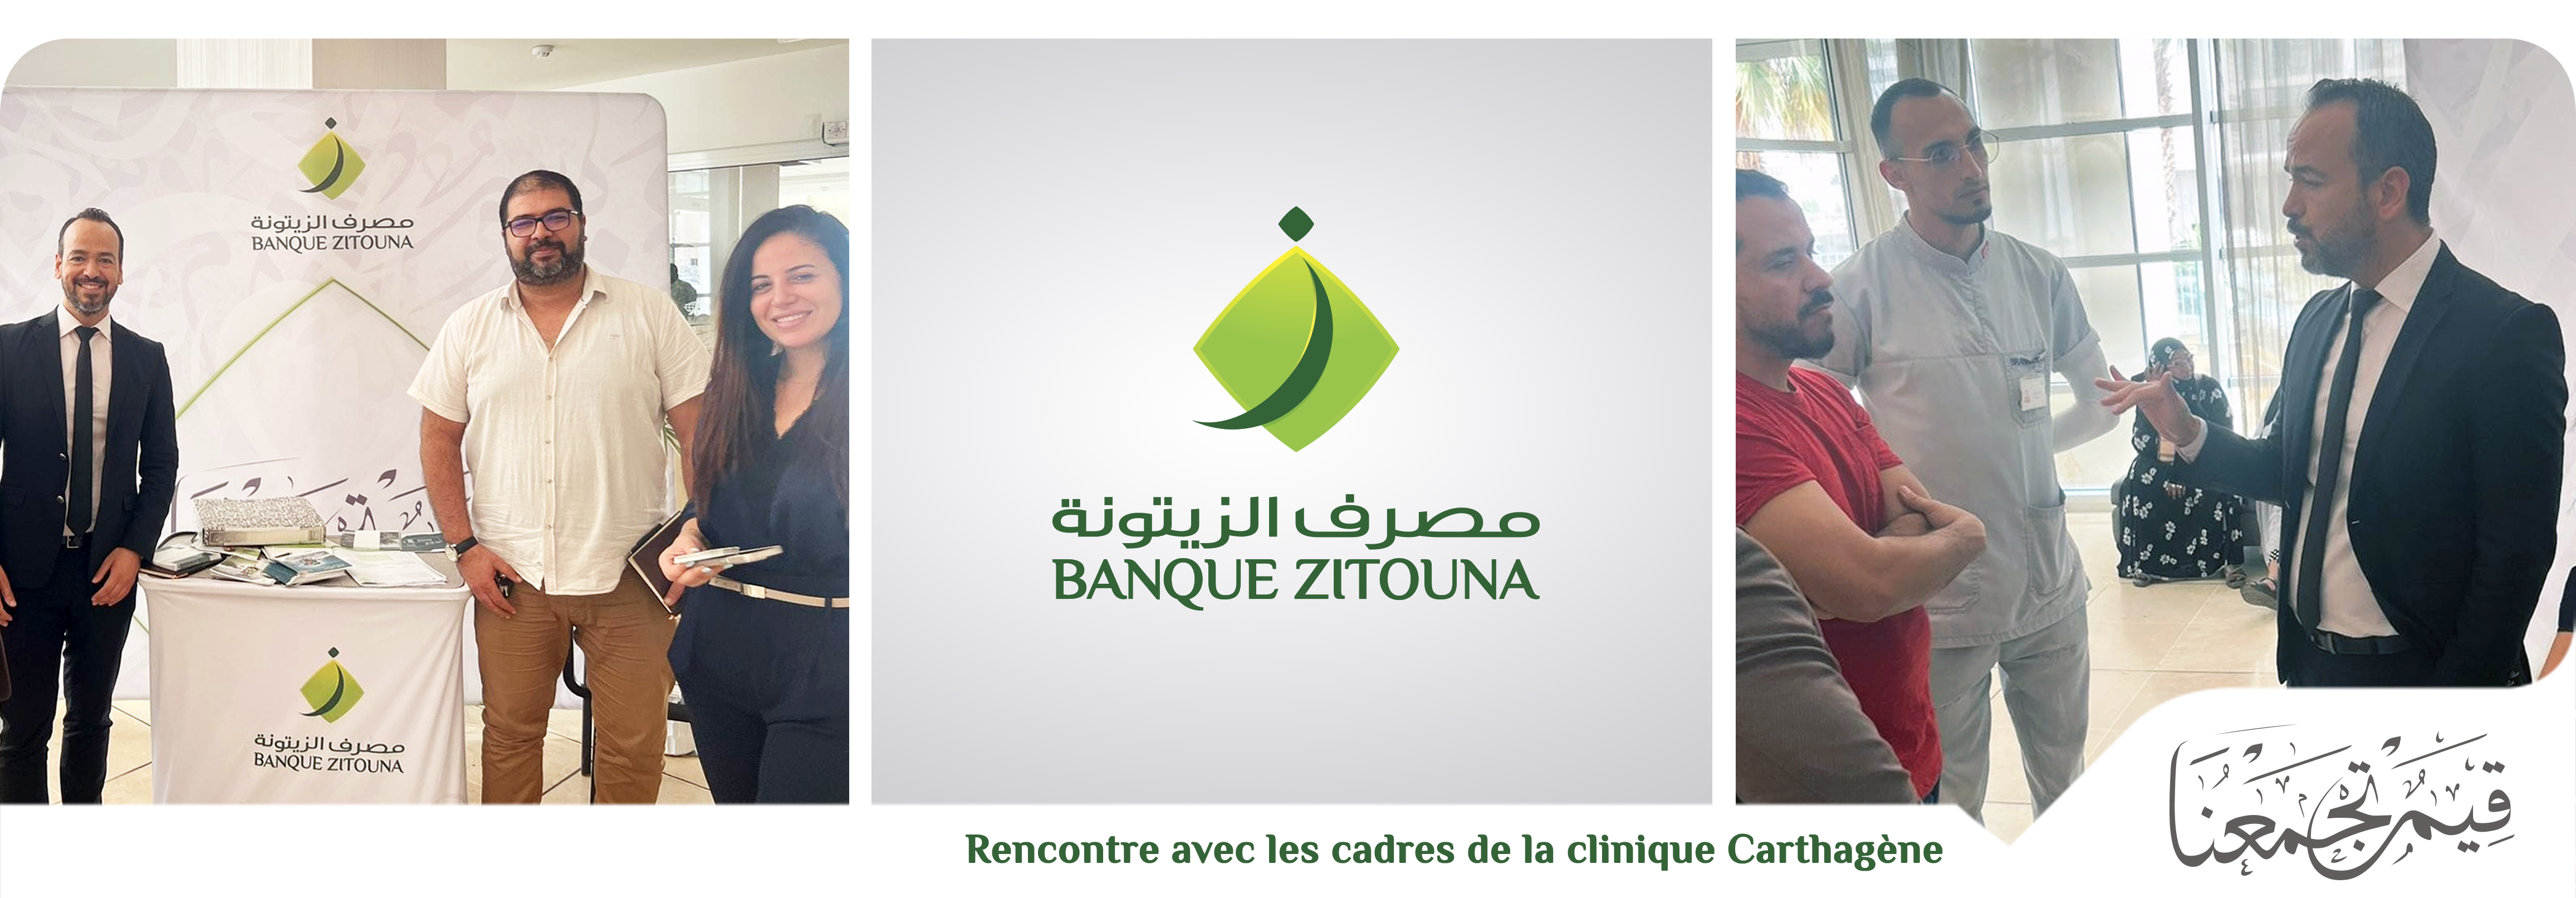 Banque Zitouna va à la rencontre des cadres de la clinique Carthagène